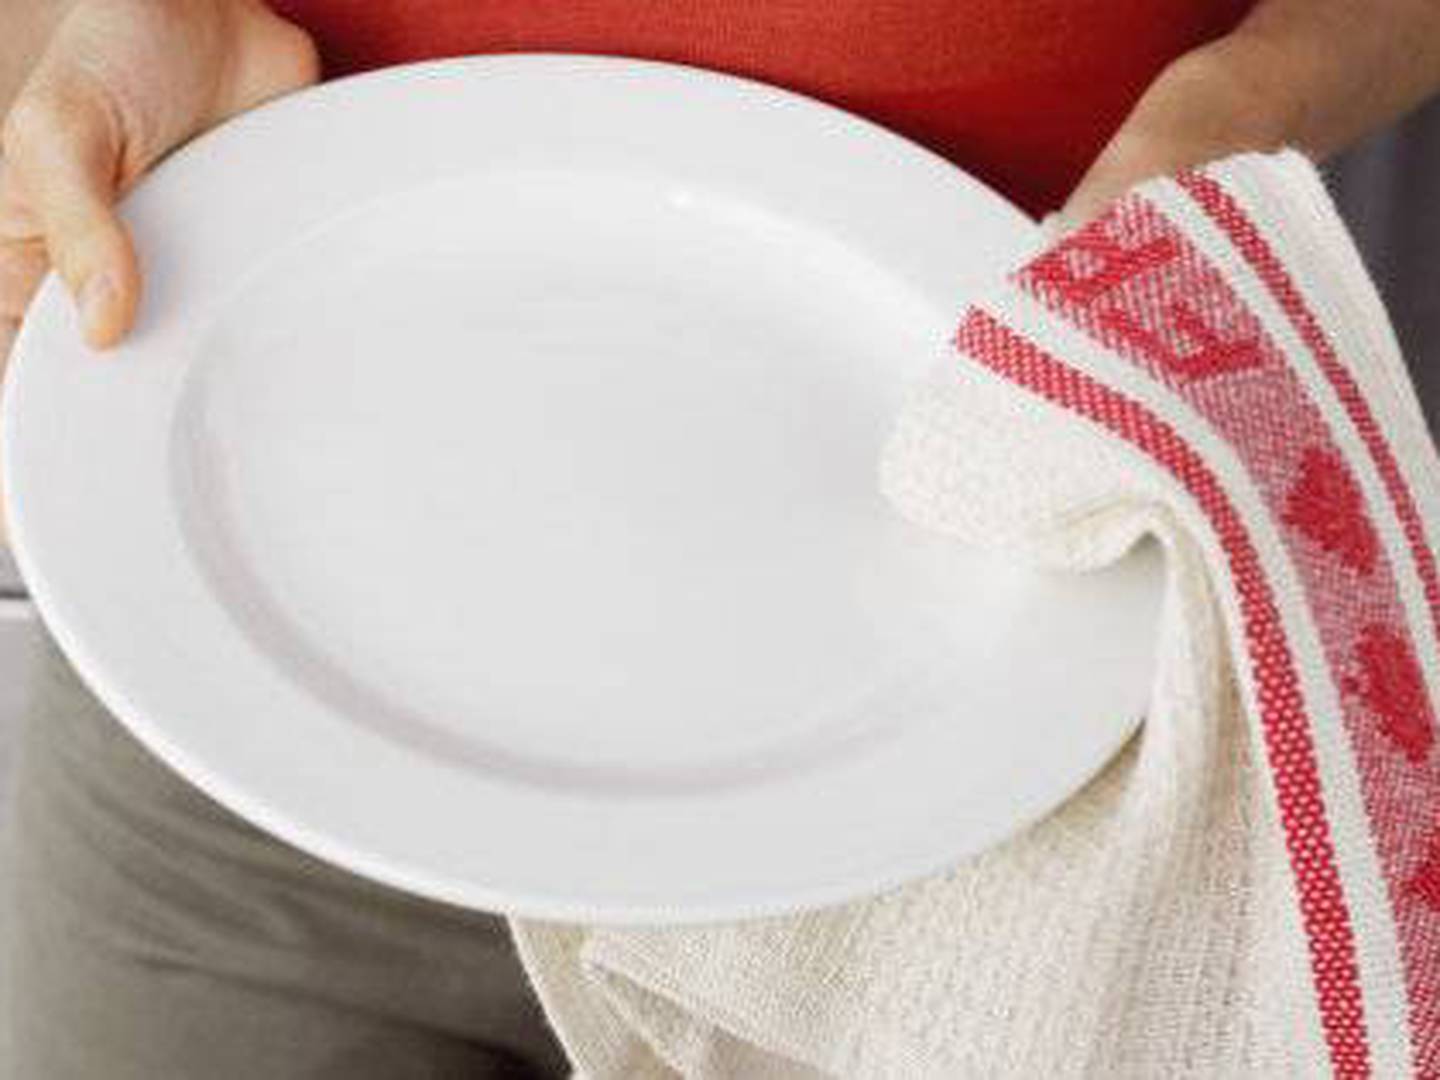 Por qué reutilizar los paños de cocina supone un riesgo para la salud (y  cómo evitarlo) - BBC News Mundo